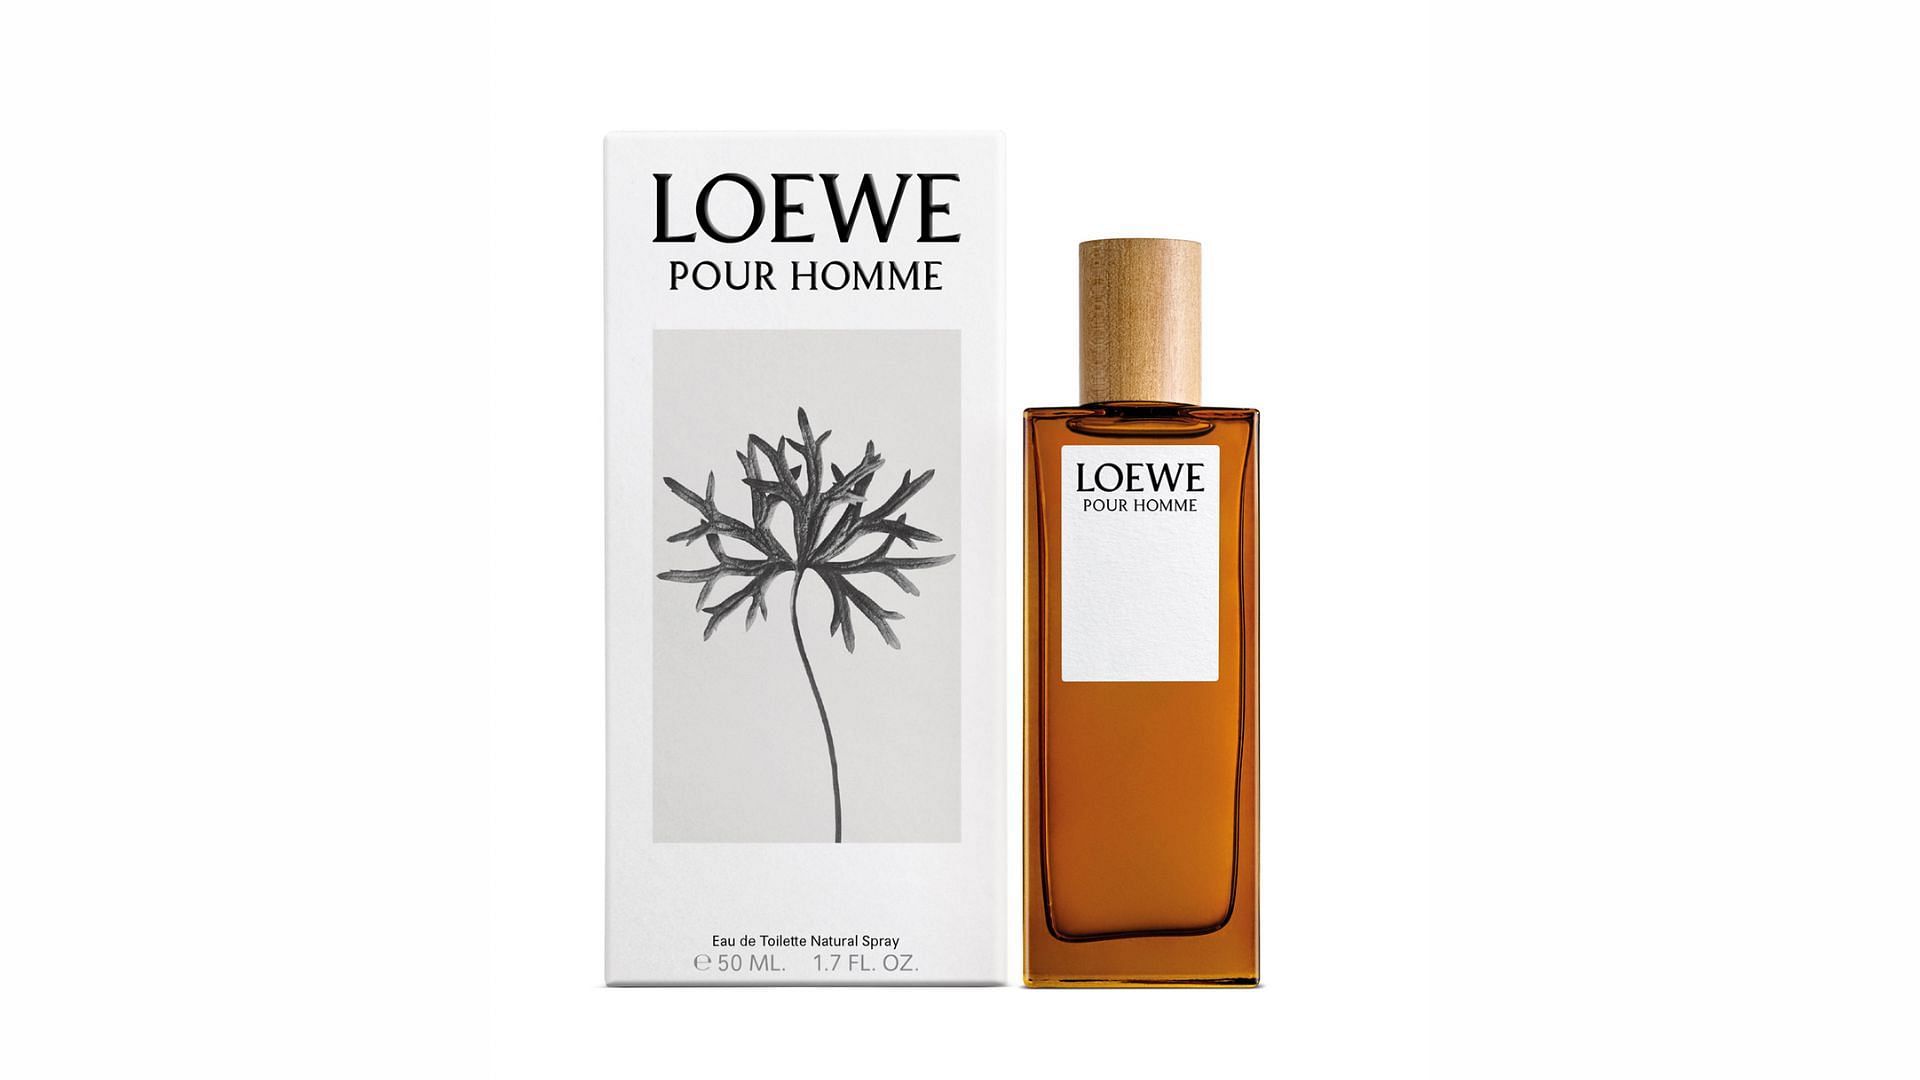 Loewe Pour Homme (Image via Loewe)